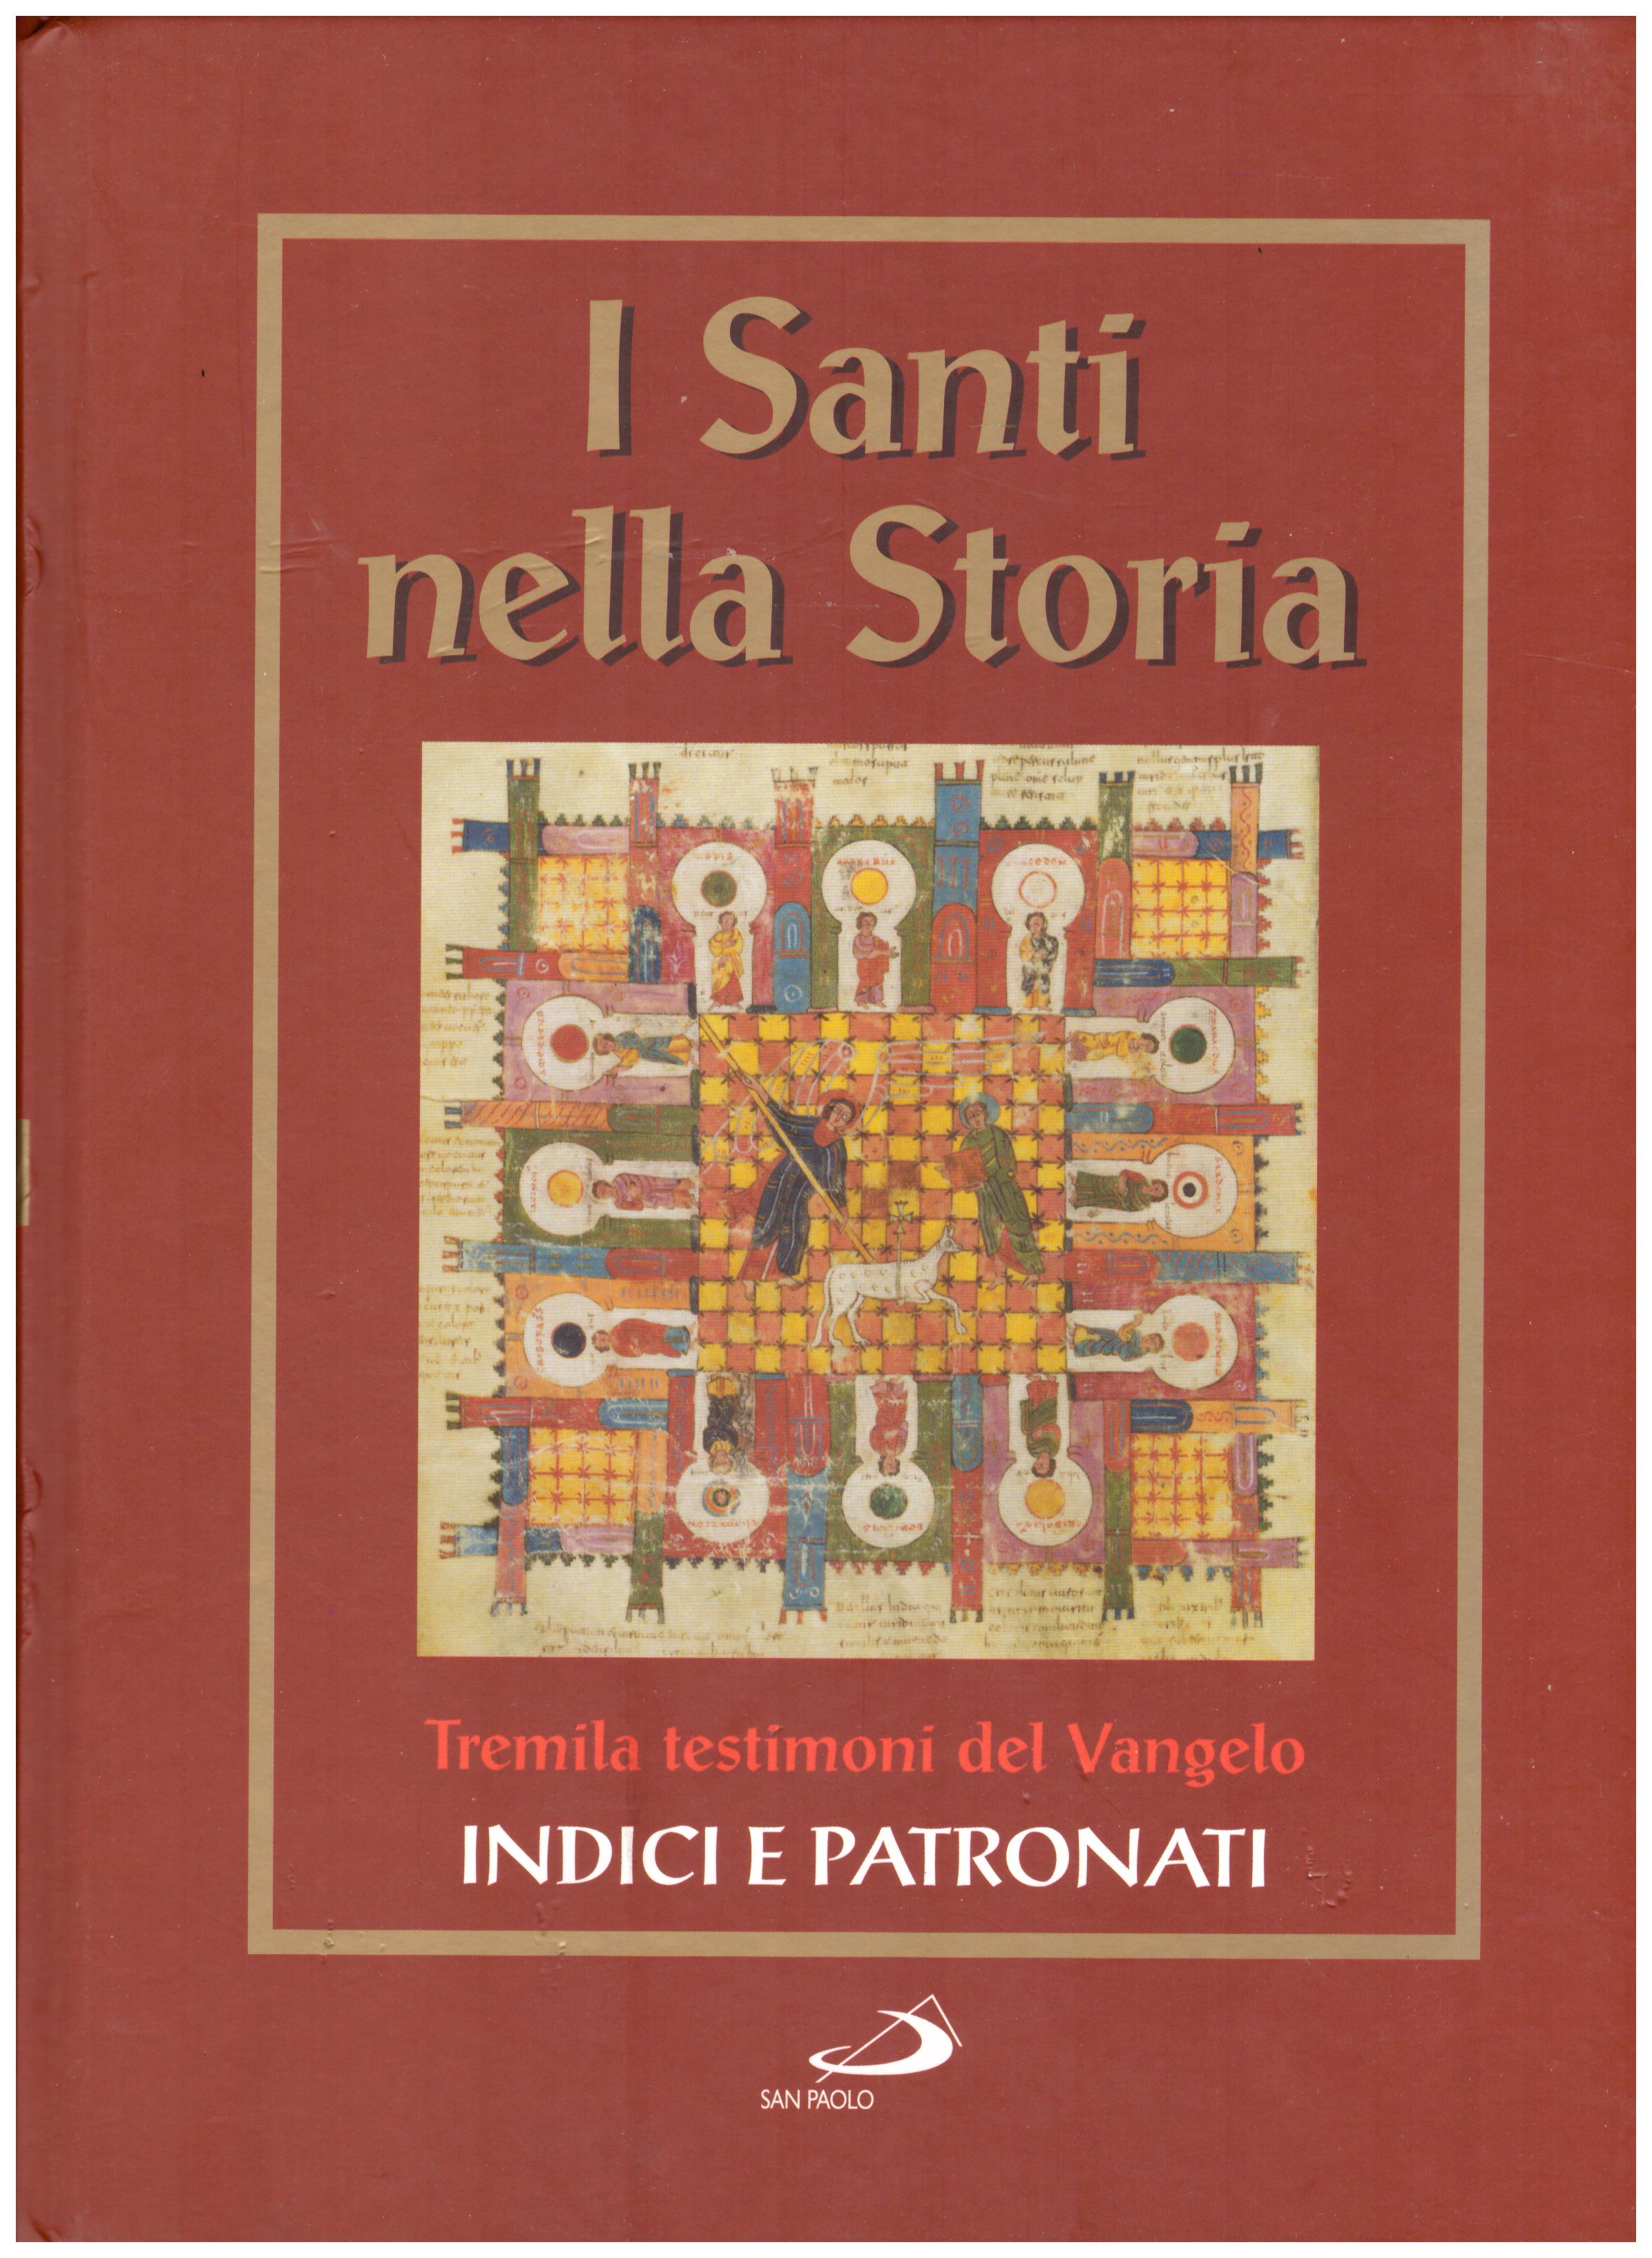 Titolo: I santi nella storia, tremila testimoni del Vangelo, Indici e Patronati  Autore : AA.VV.   Editore: San Paolo 2006